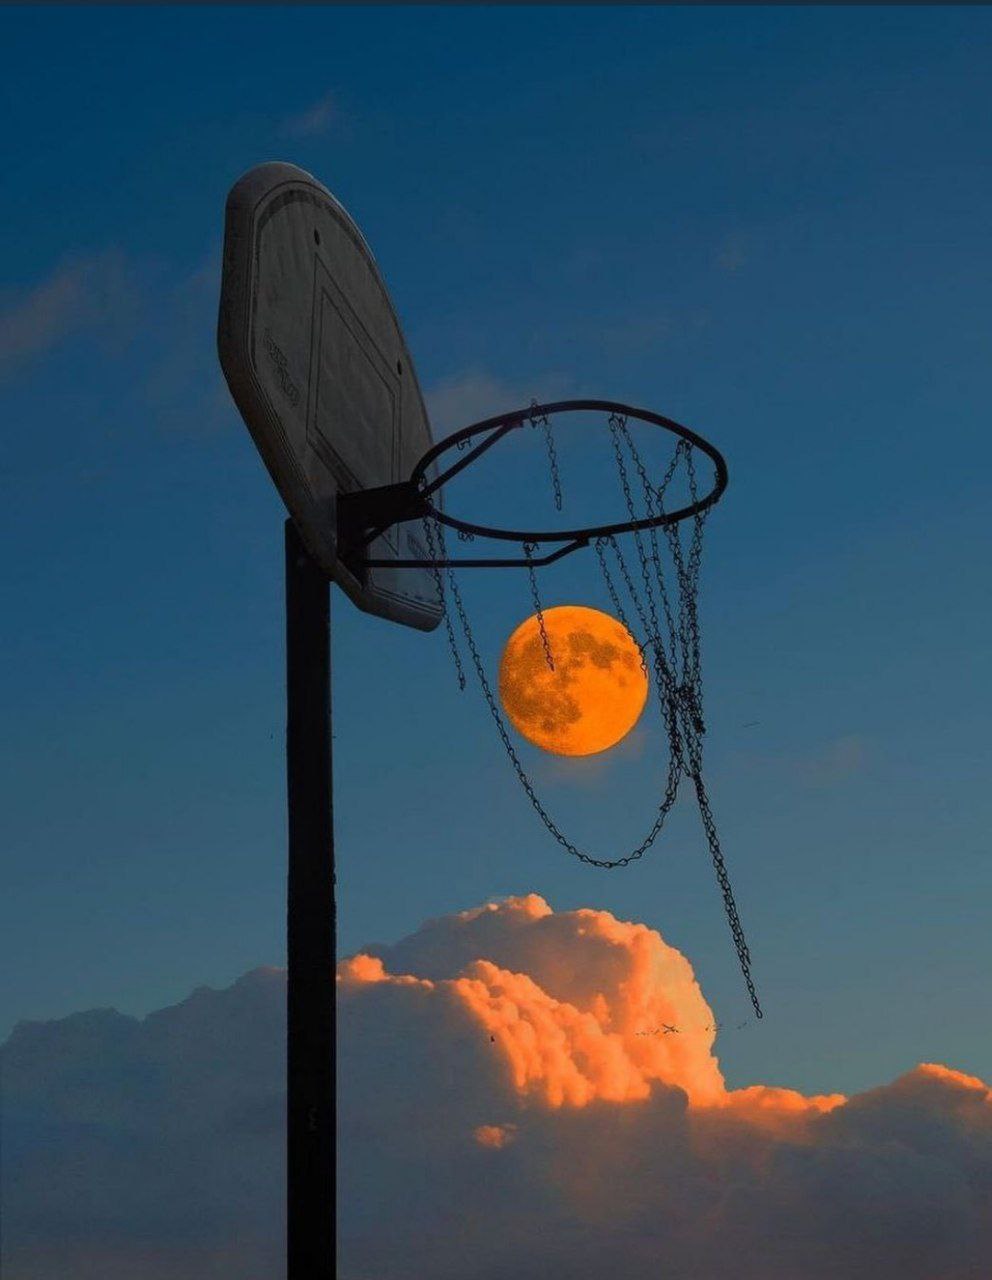 تصویر دیدنی از ماه در سبد بسکتبال+عکس